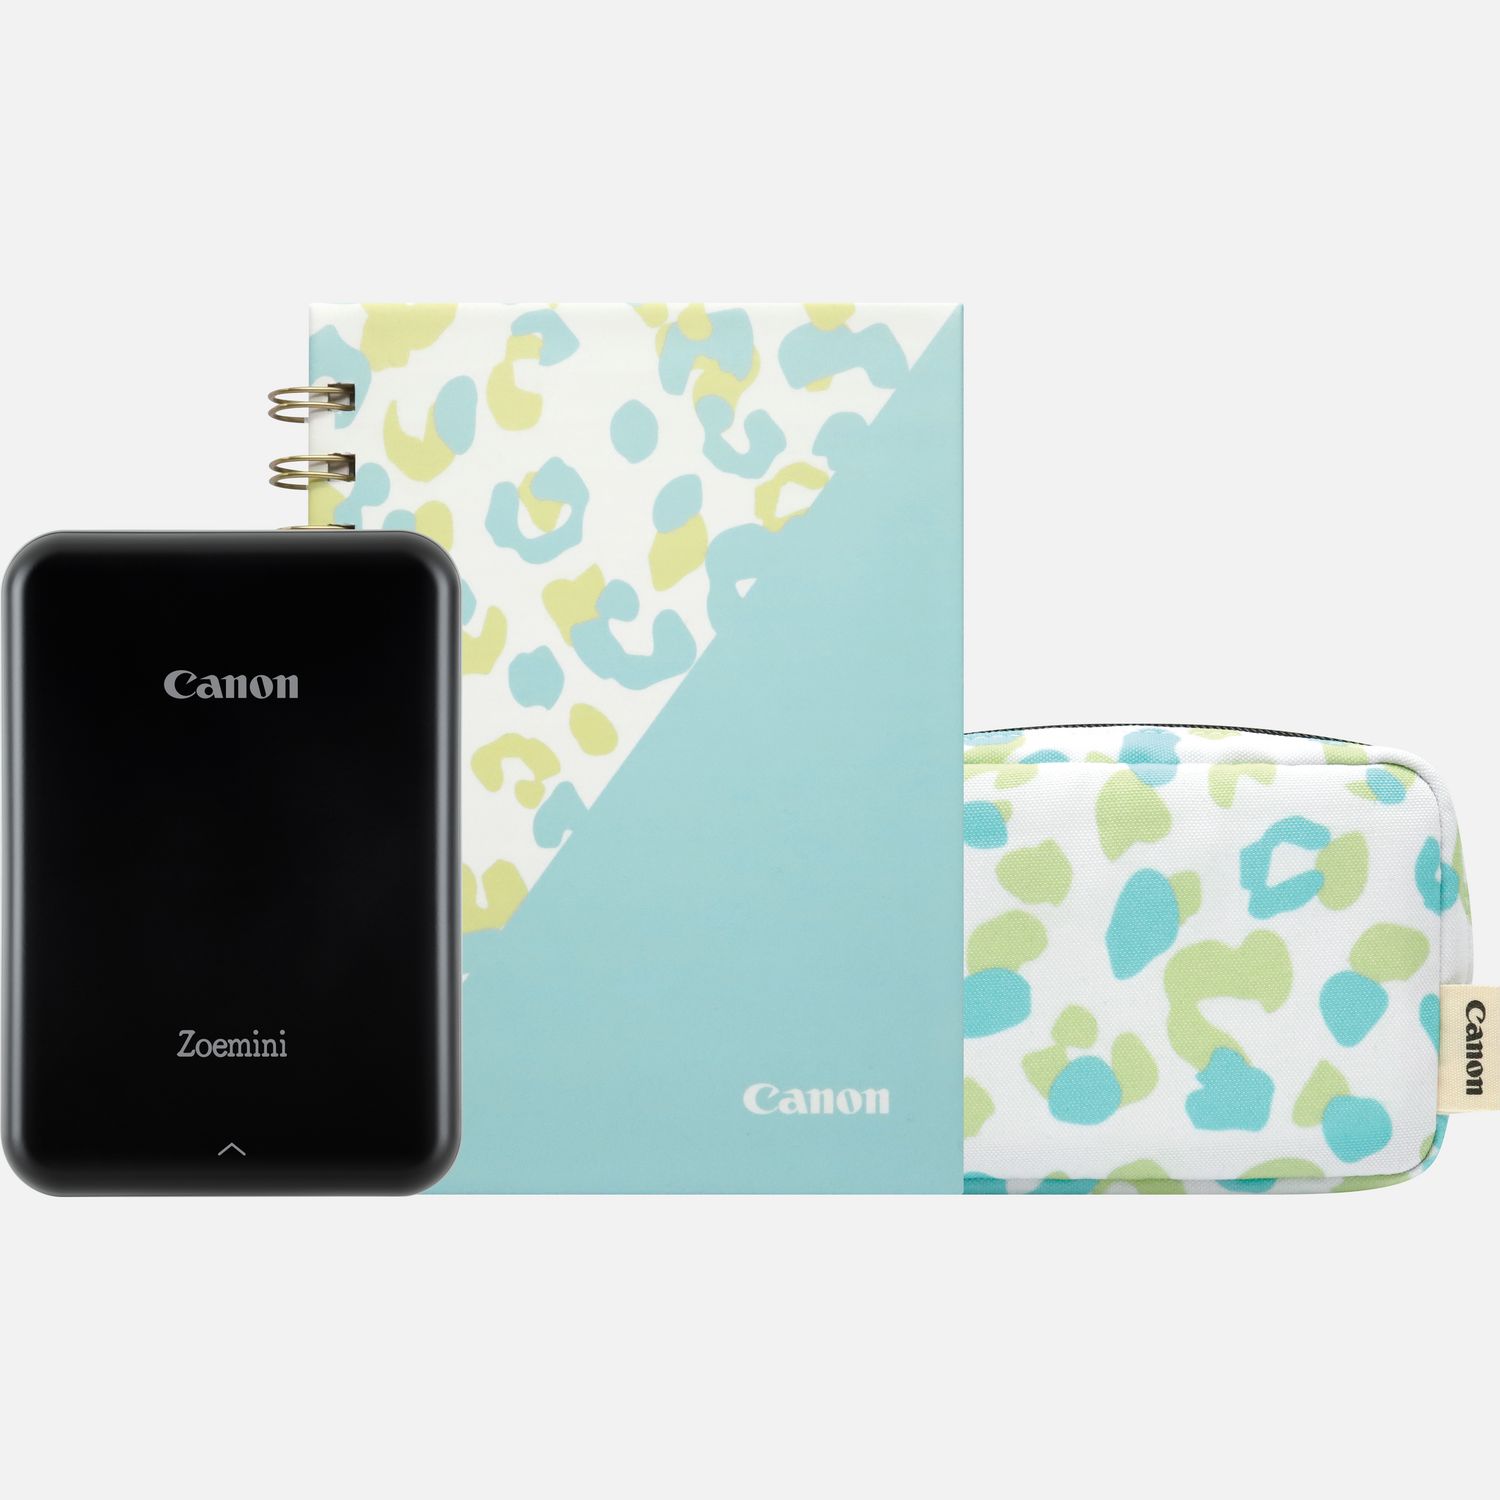 Image of Stampante fotografica a colori portatile Canon Zoemini (nera), diario e custodia